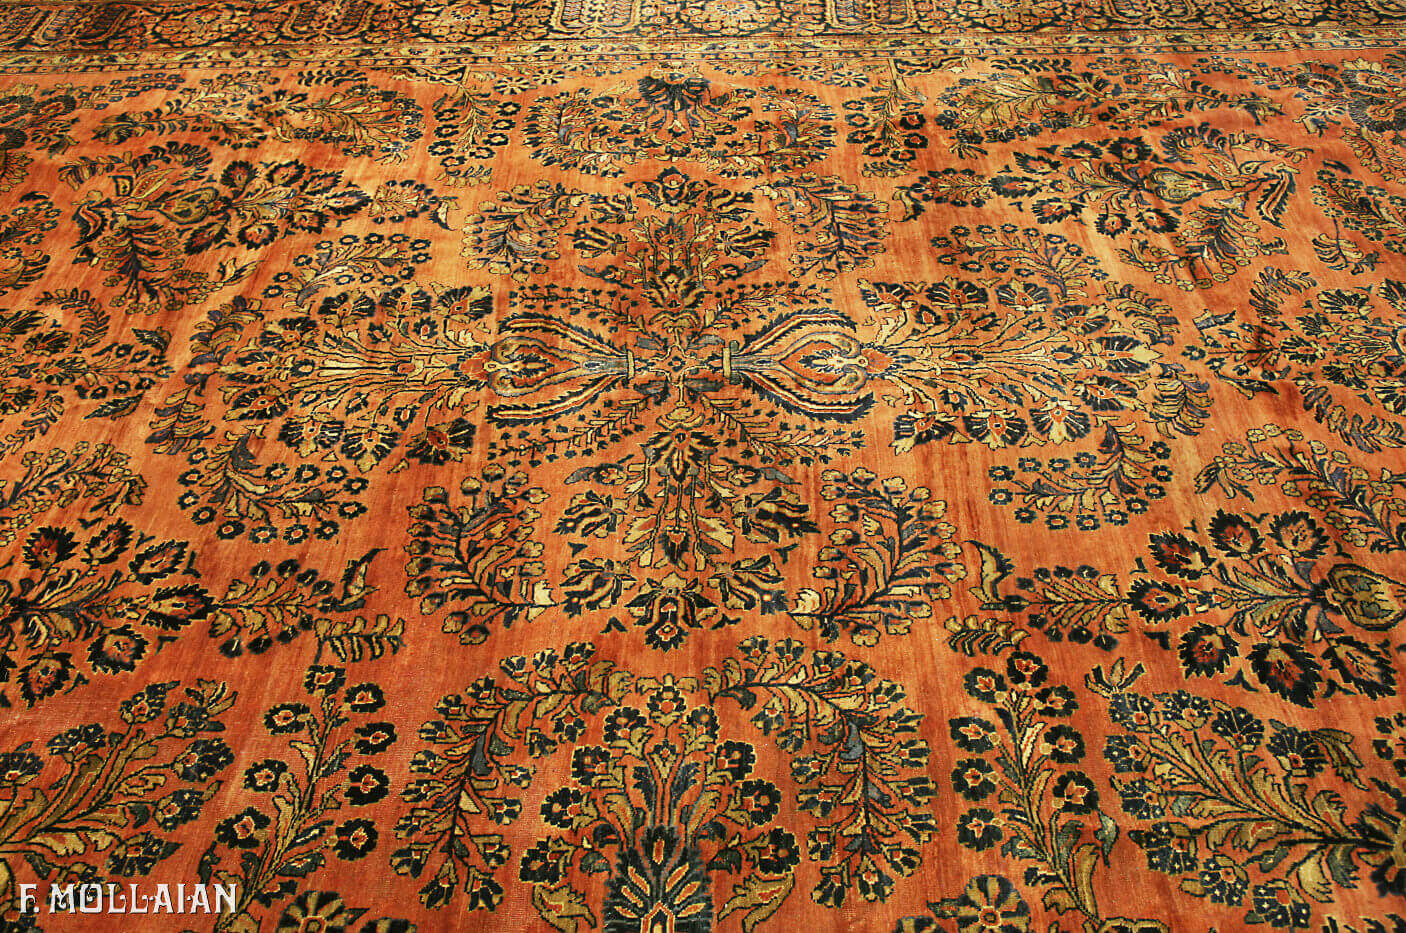 Teppich Persischer Antiker Saruk n°:64298645